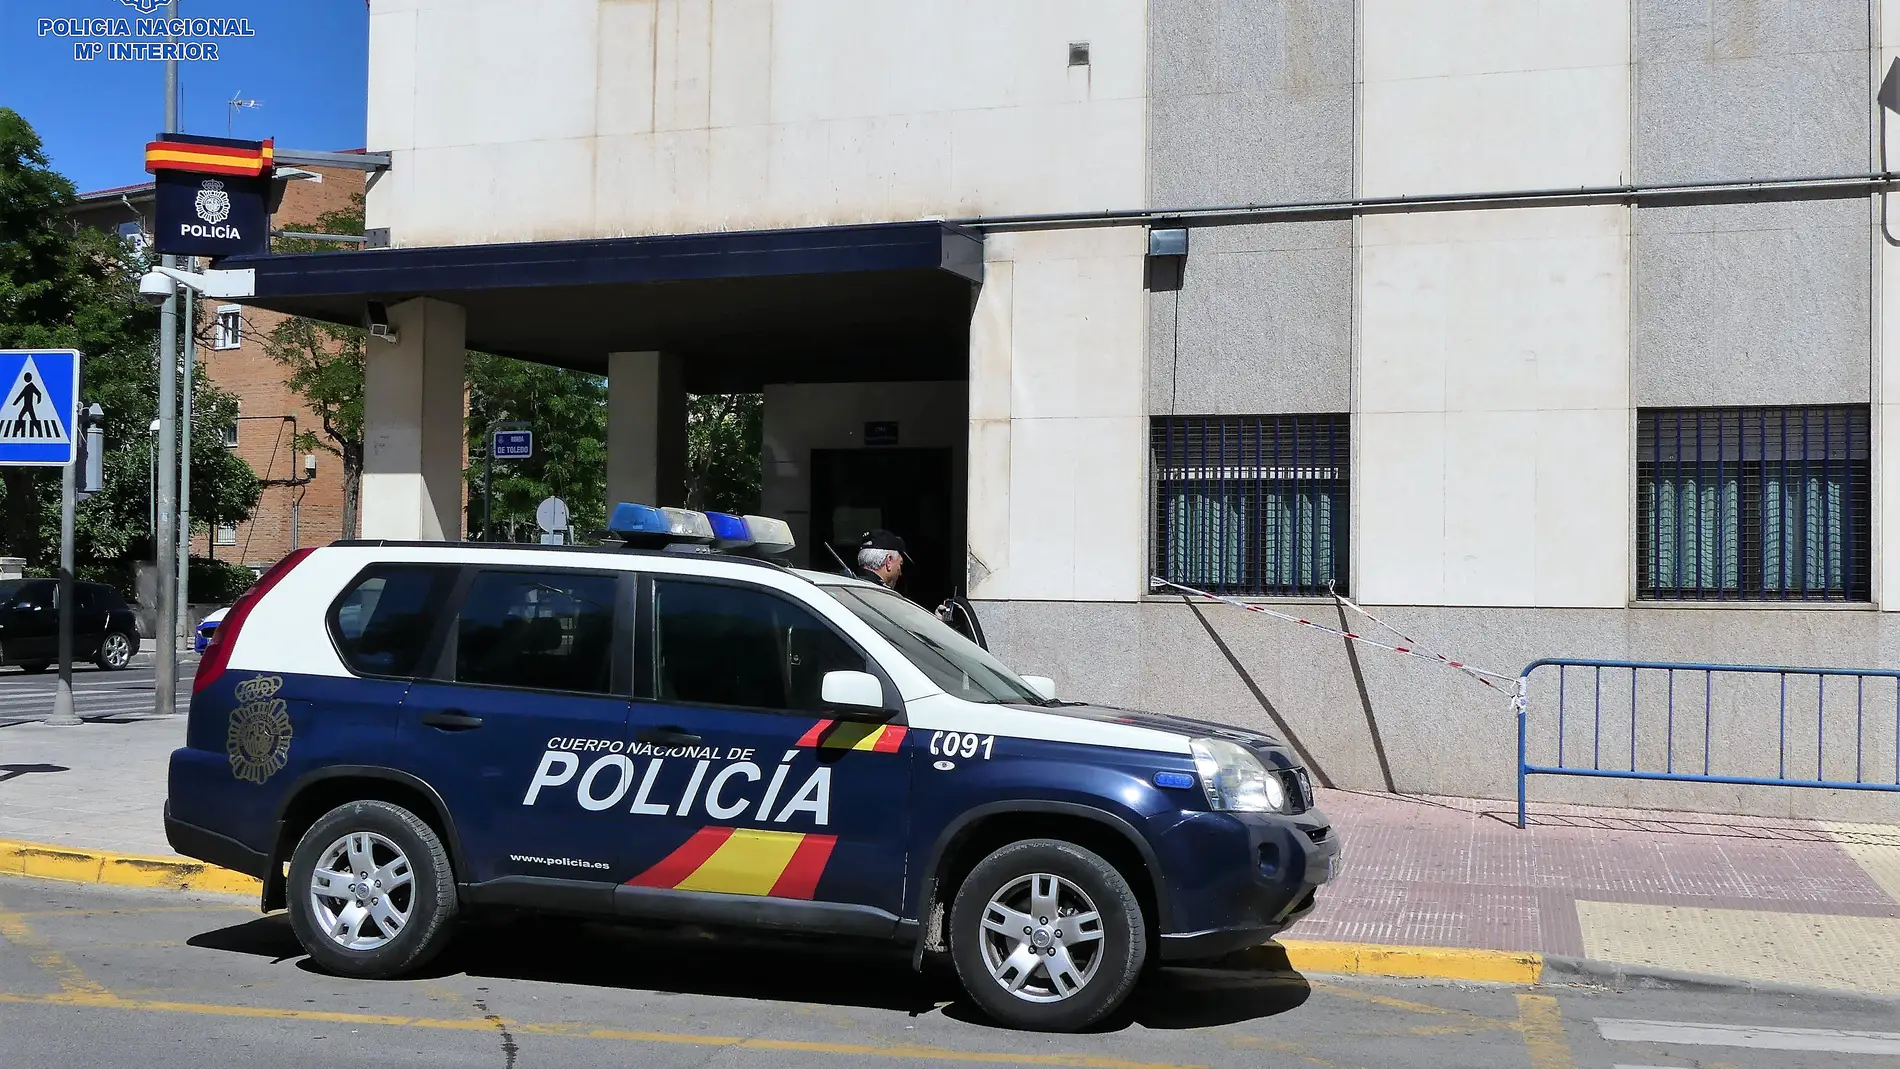 Comisaría de la Policía Nacional de Ciudad Real